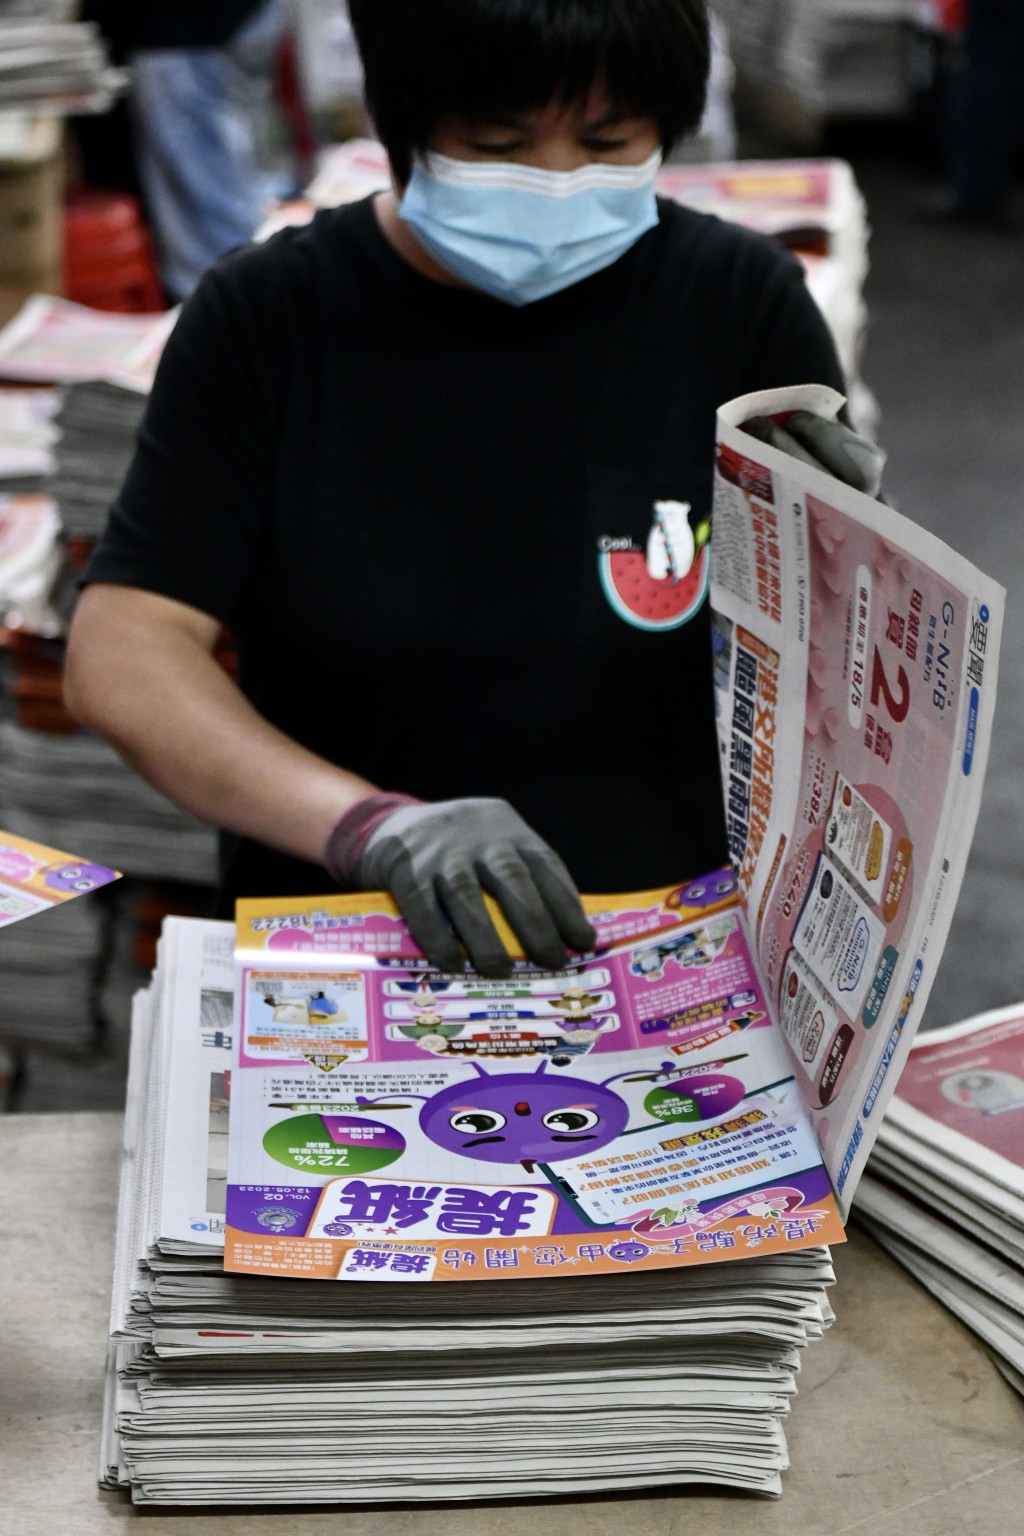 印制工人将「提纸」加进两份免费报纸内。